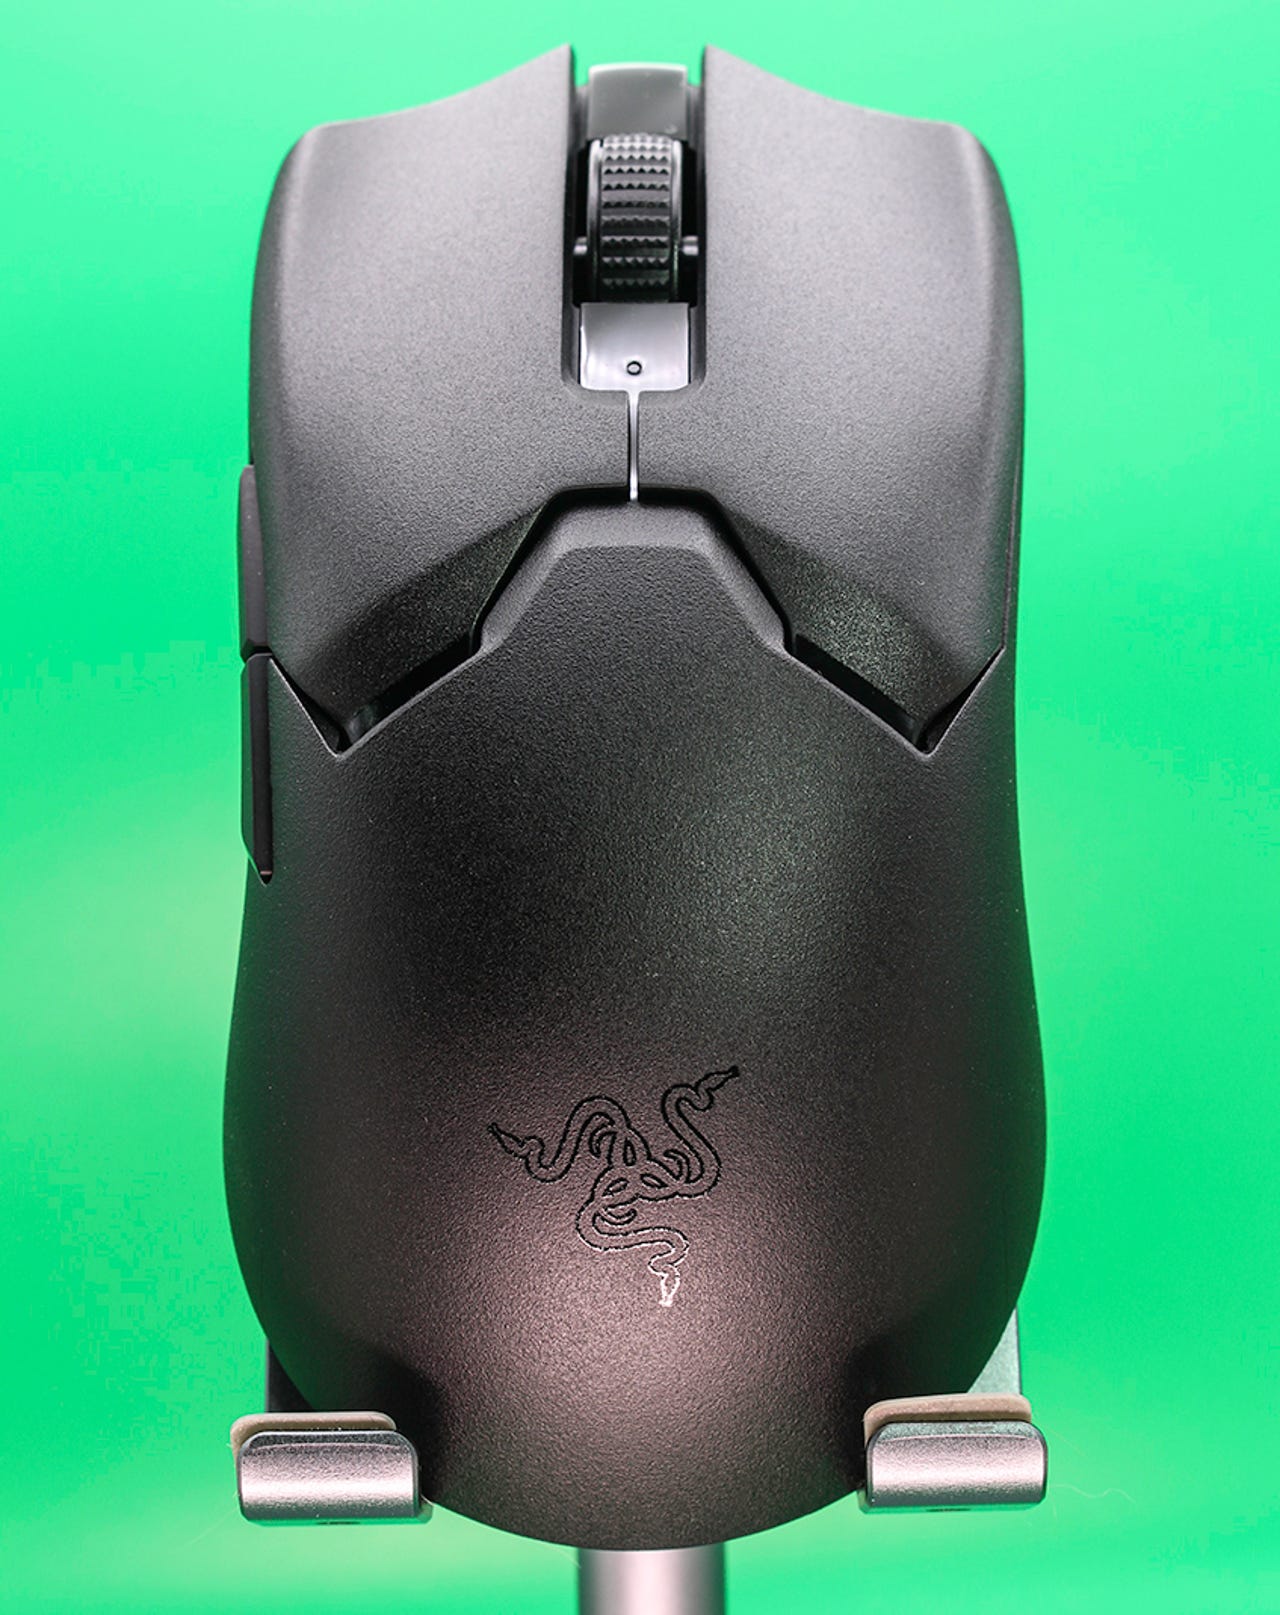 Razer Viper V2 Pro review: Razer's flagship mouse finally goes